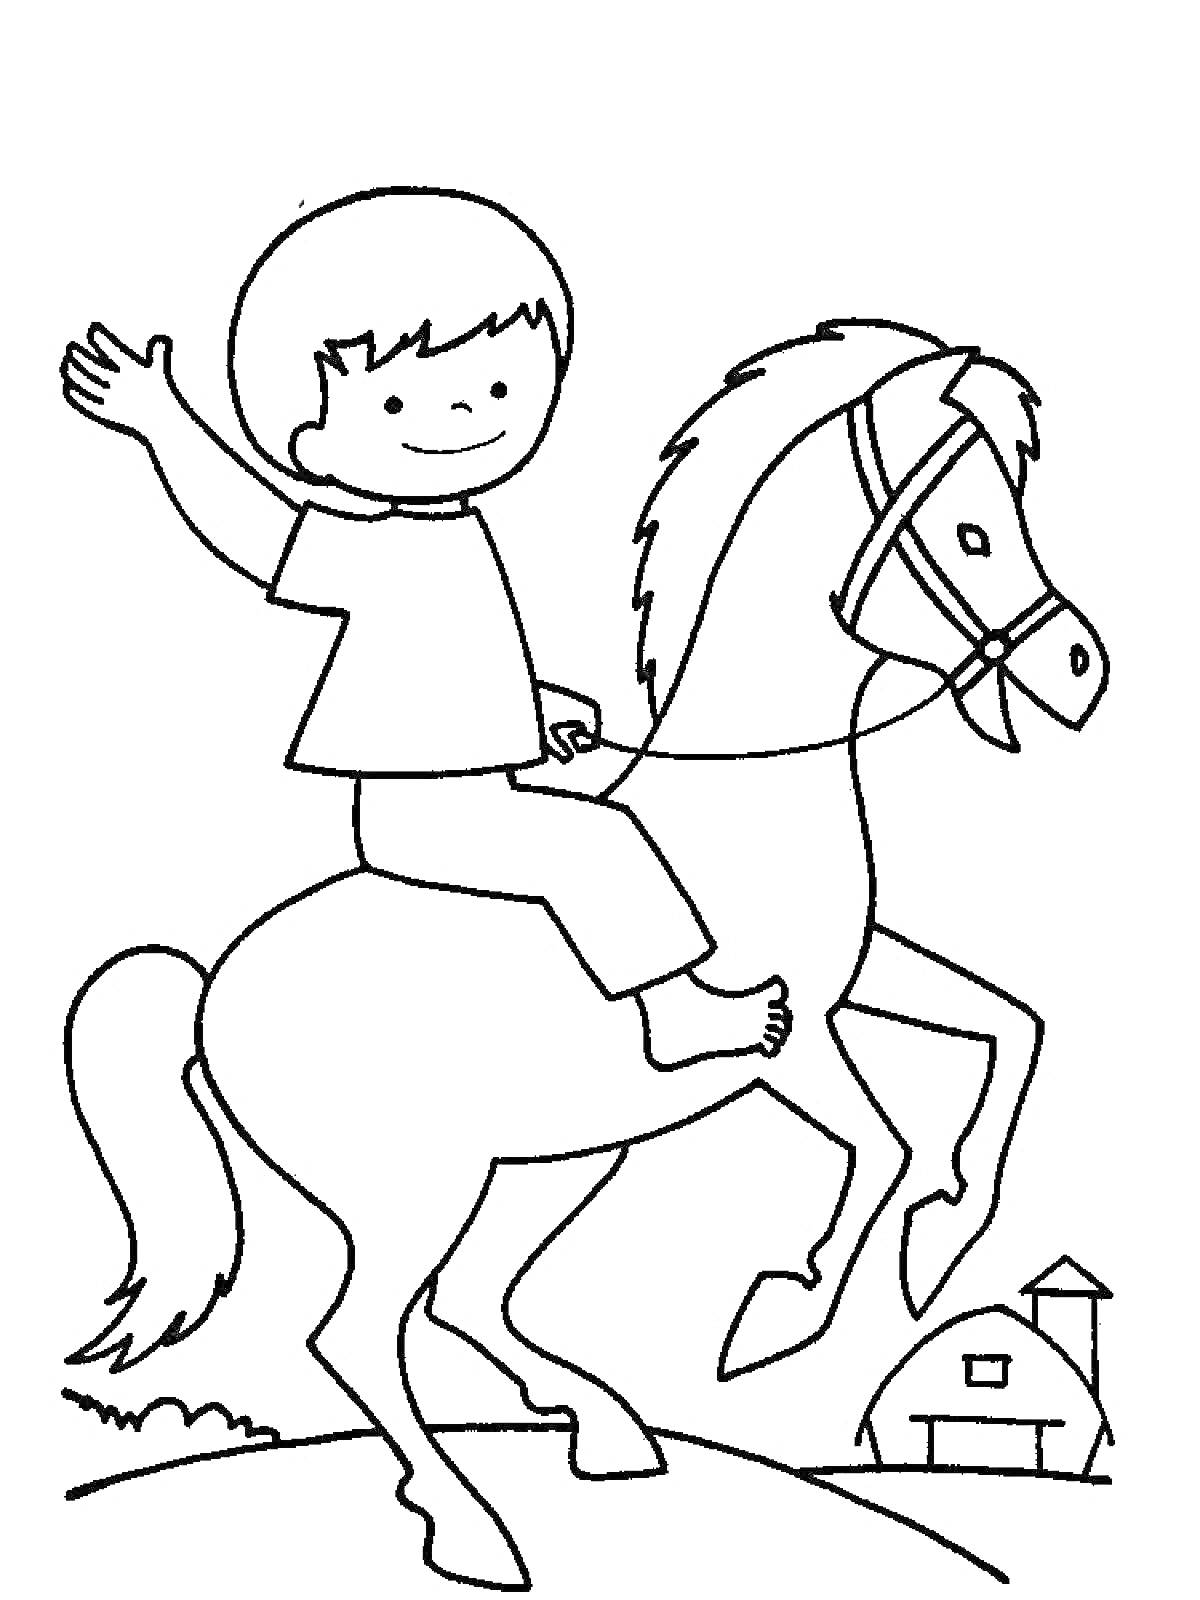 счастливый всадник на лошади с амбаром на заднем плане